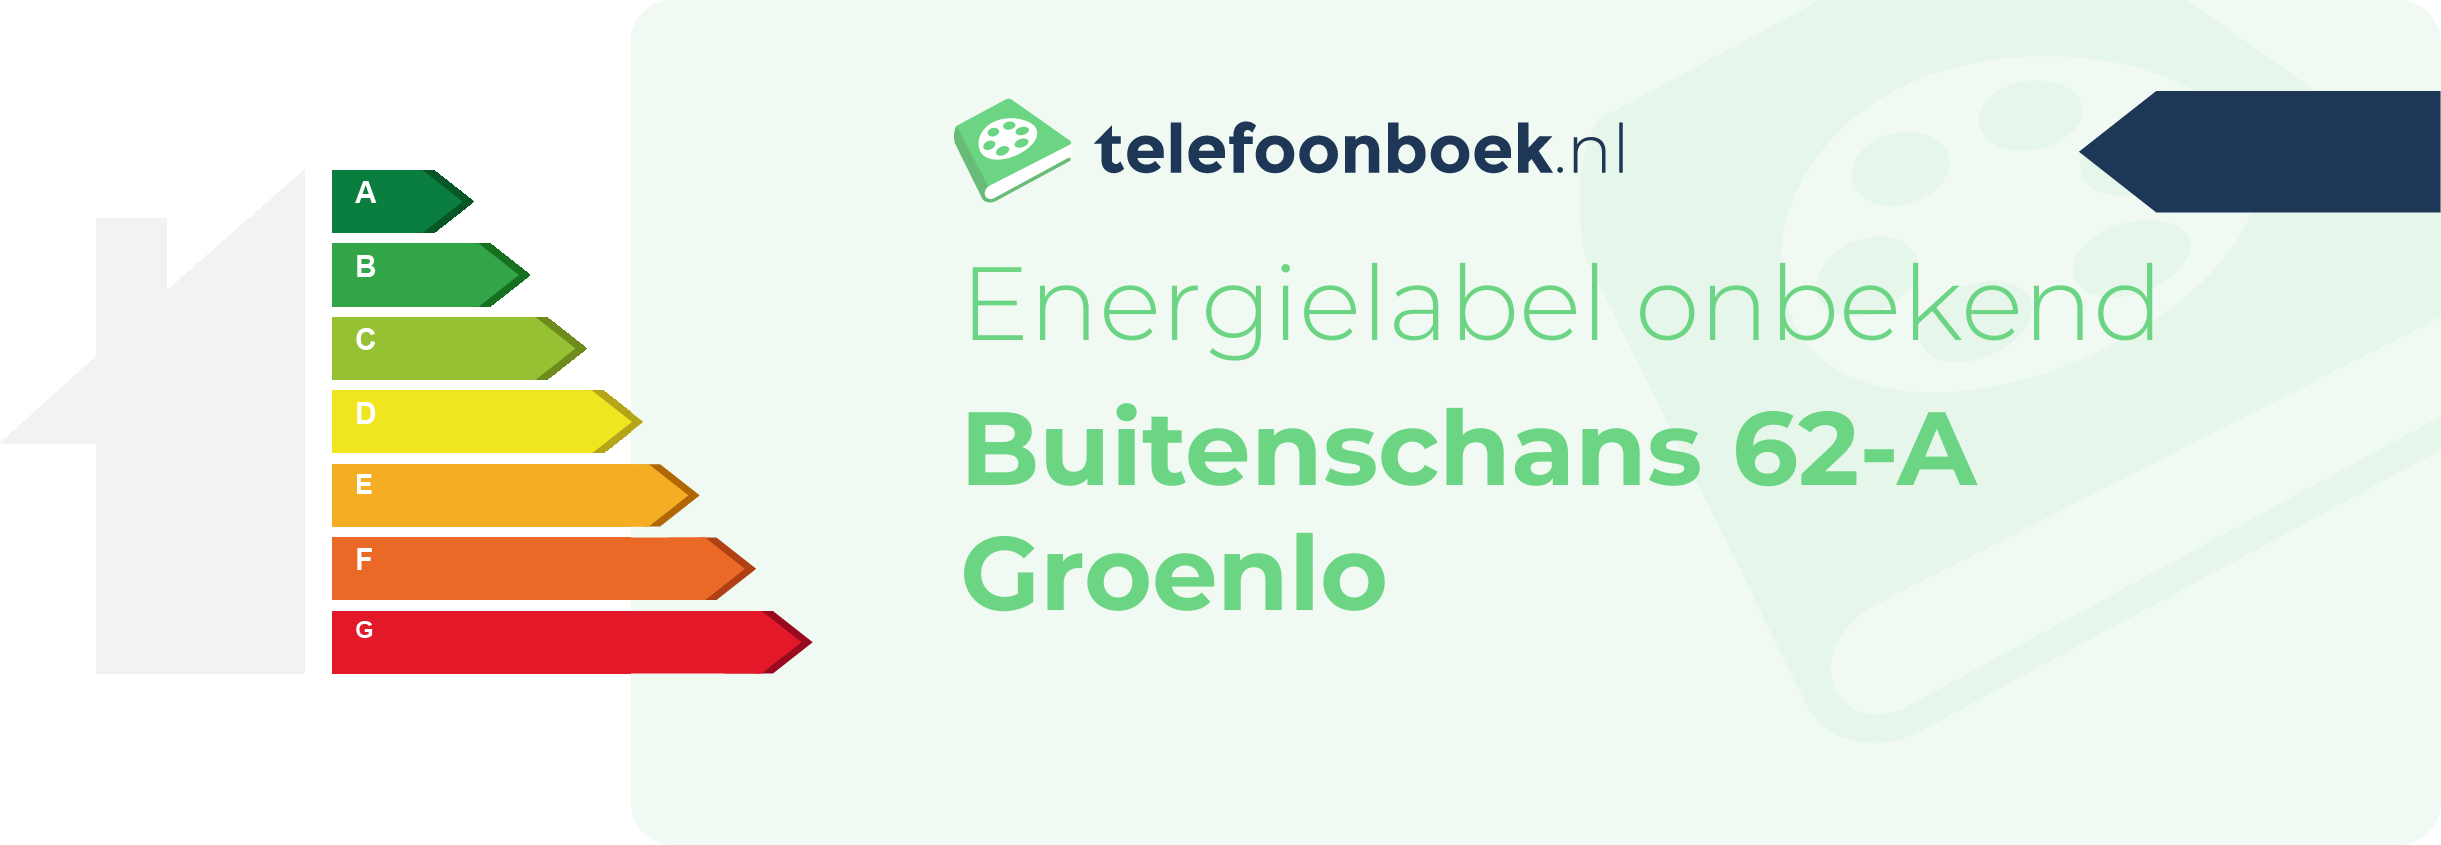 Energielabel Buitenschans 62-A Groenlo